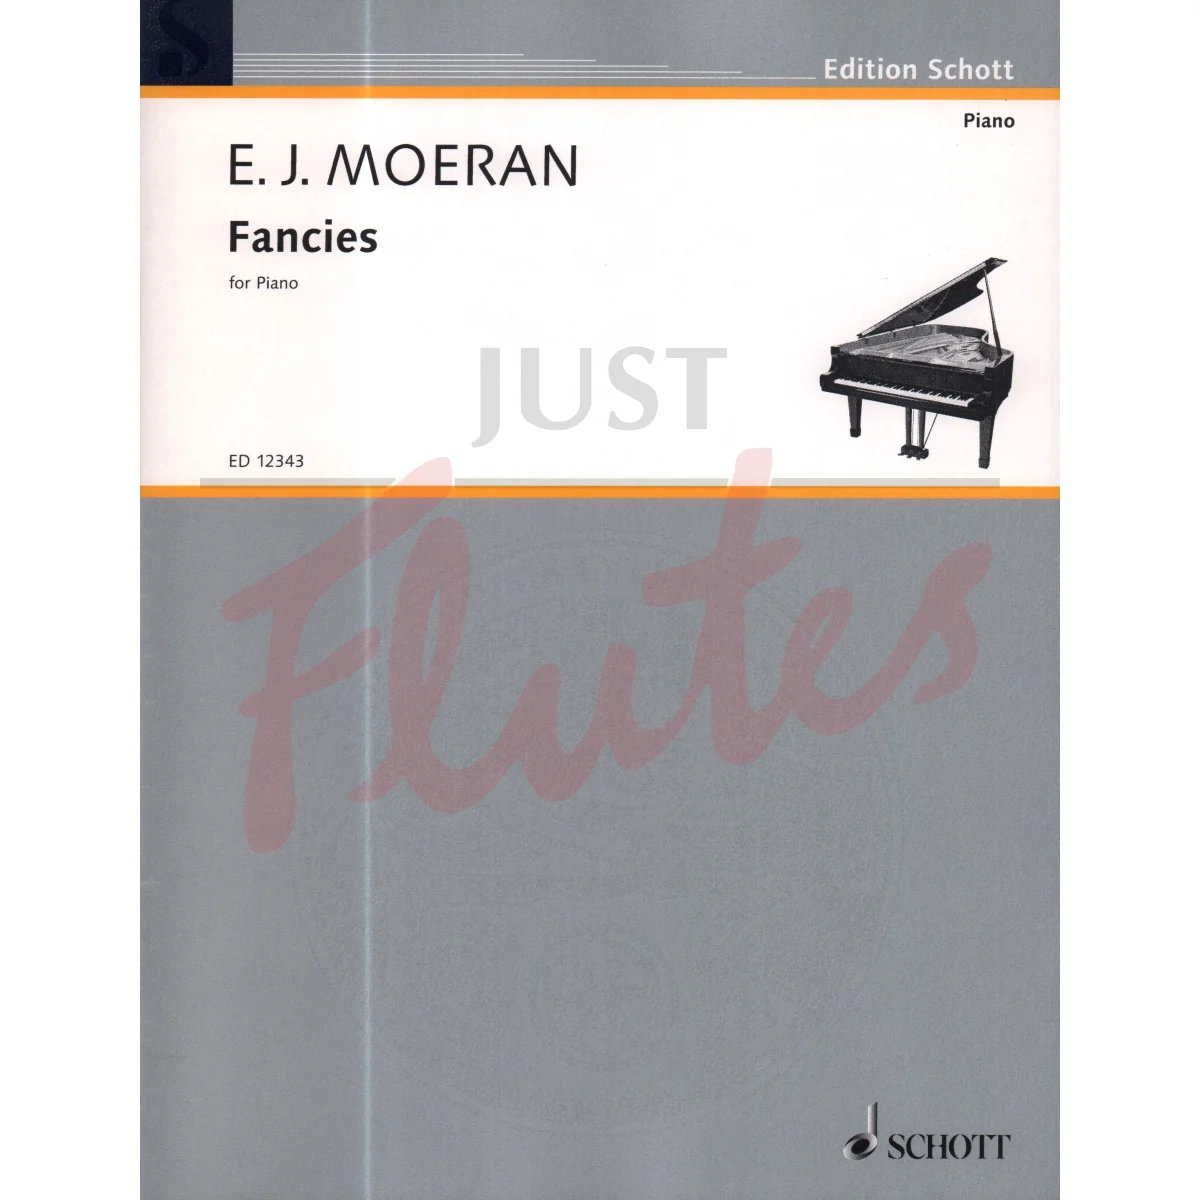 Fancies for Piano